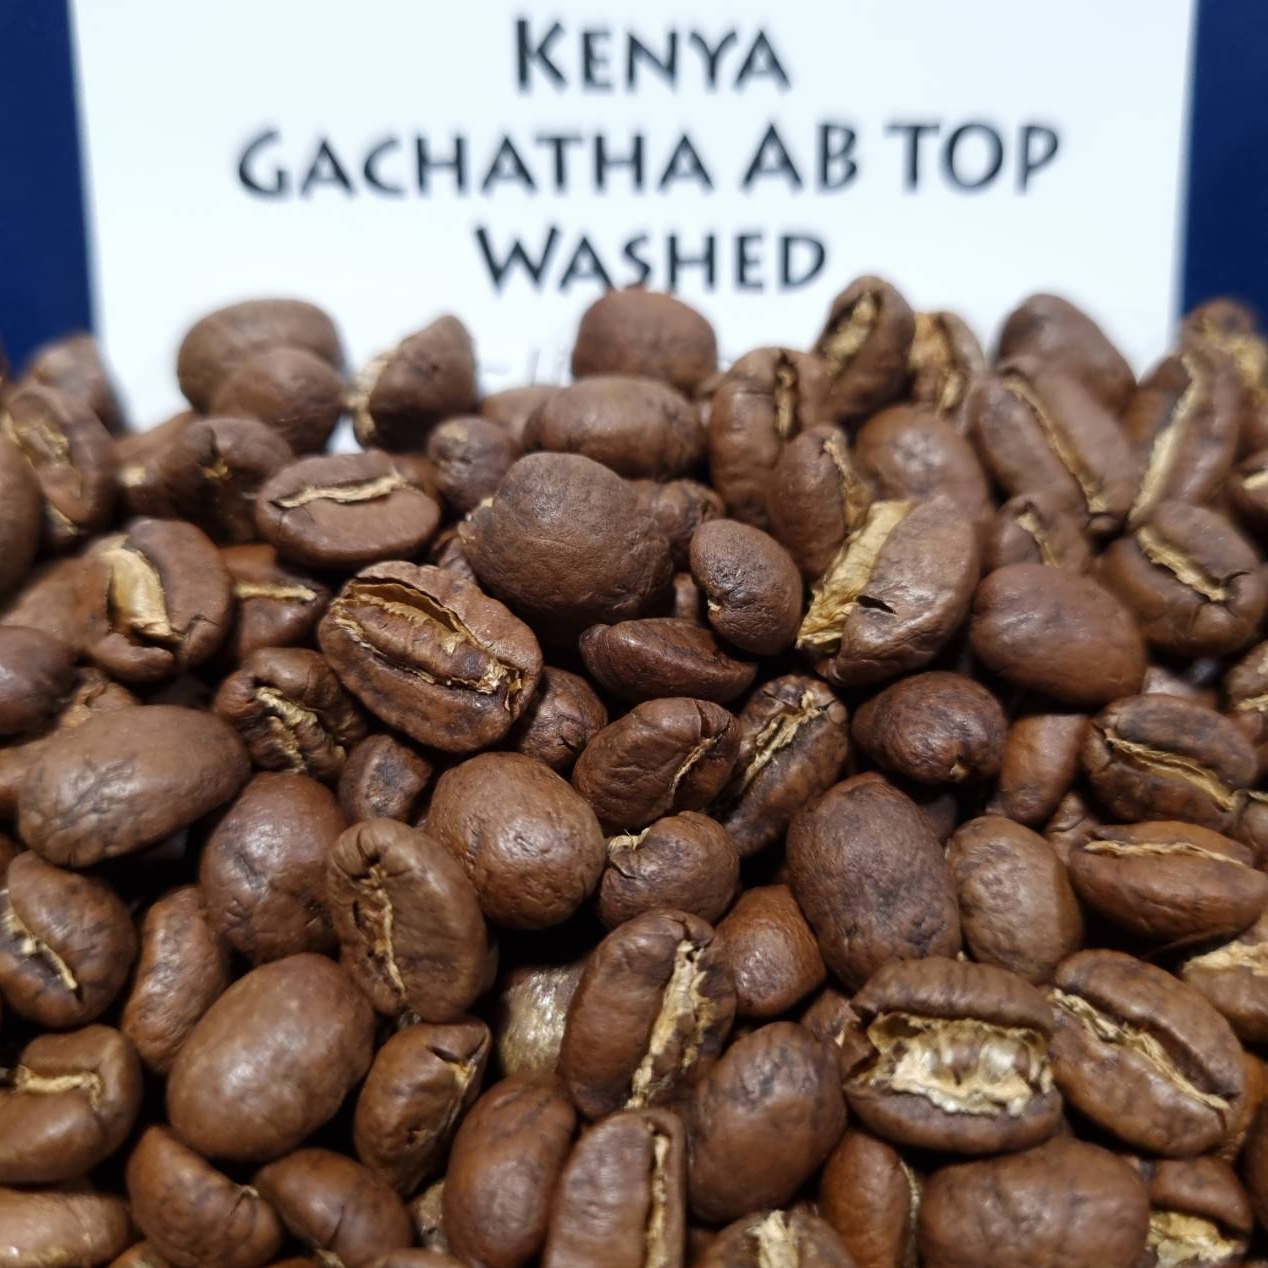 Kenya Gachatha AB Top